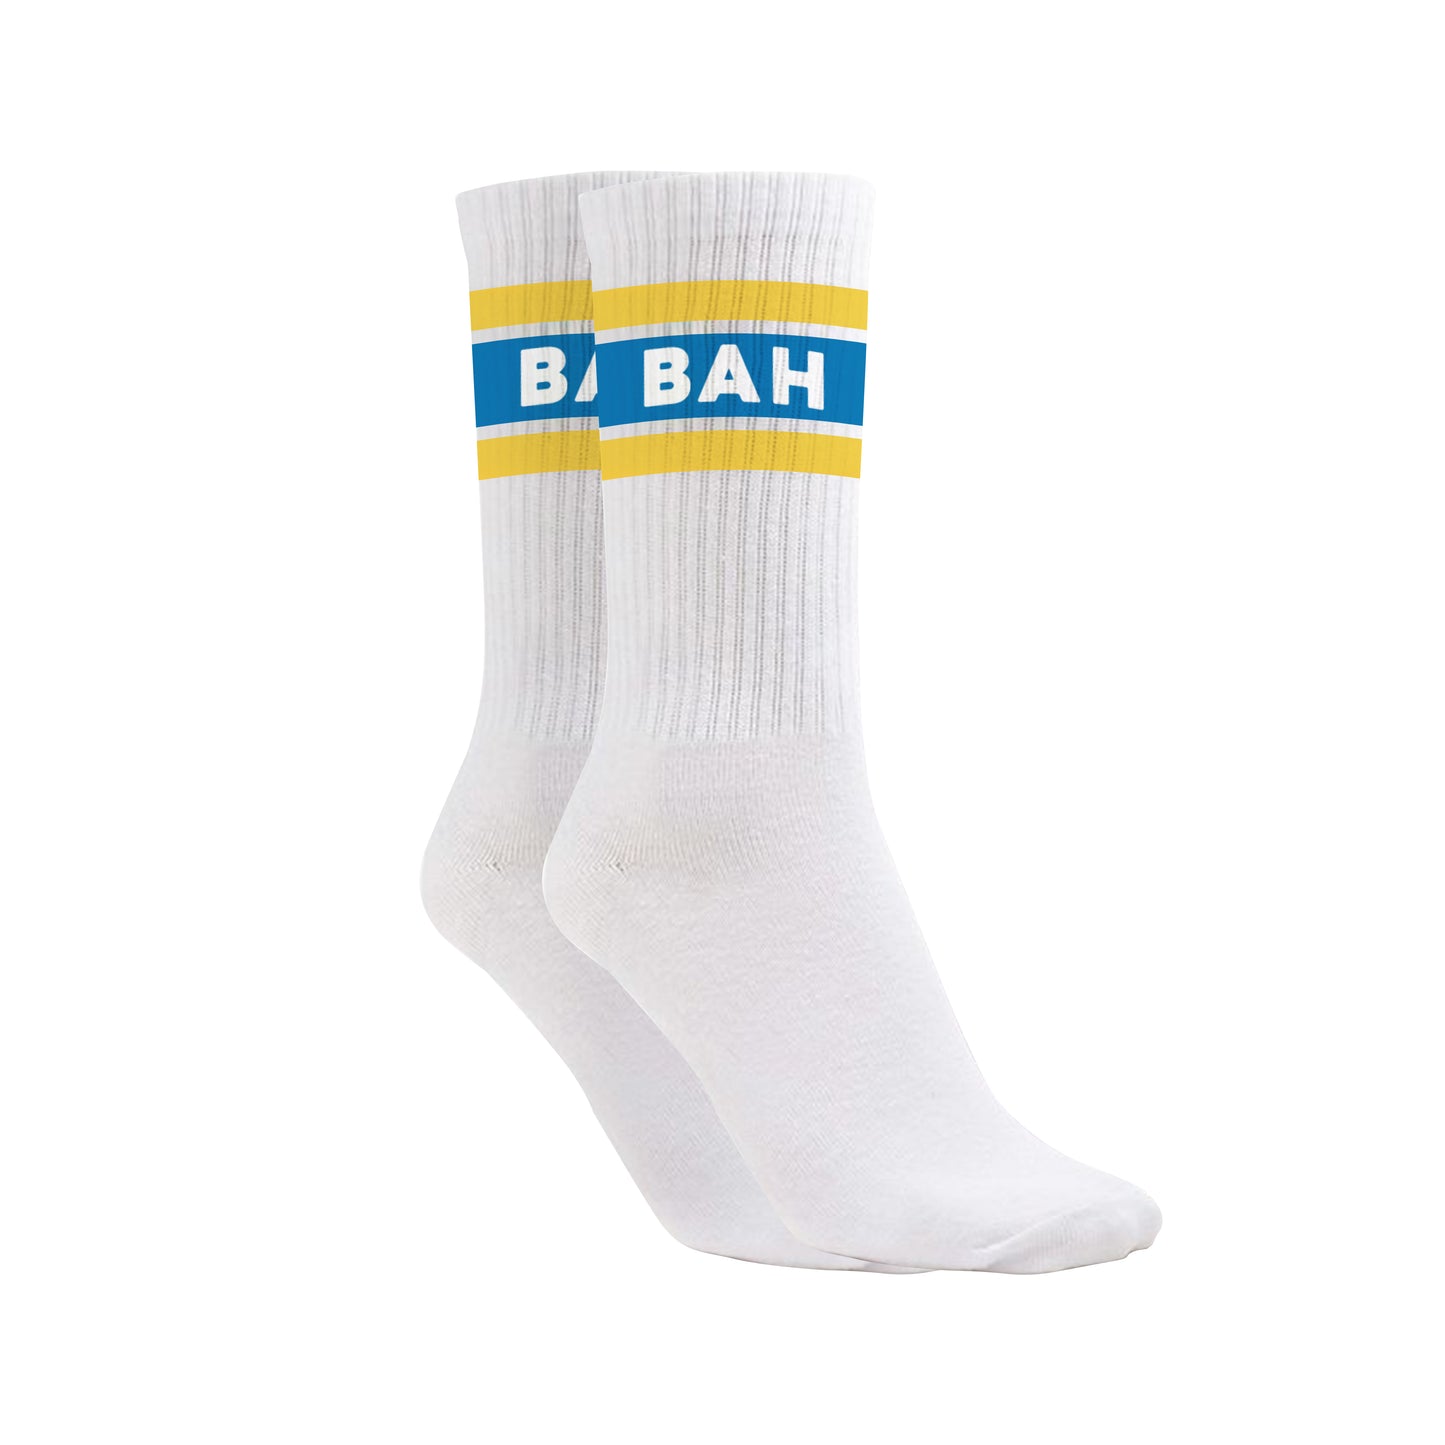 BAH Sport Performance Socks - White